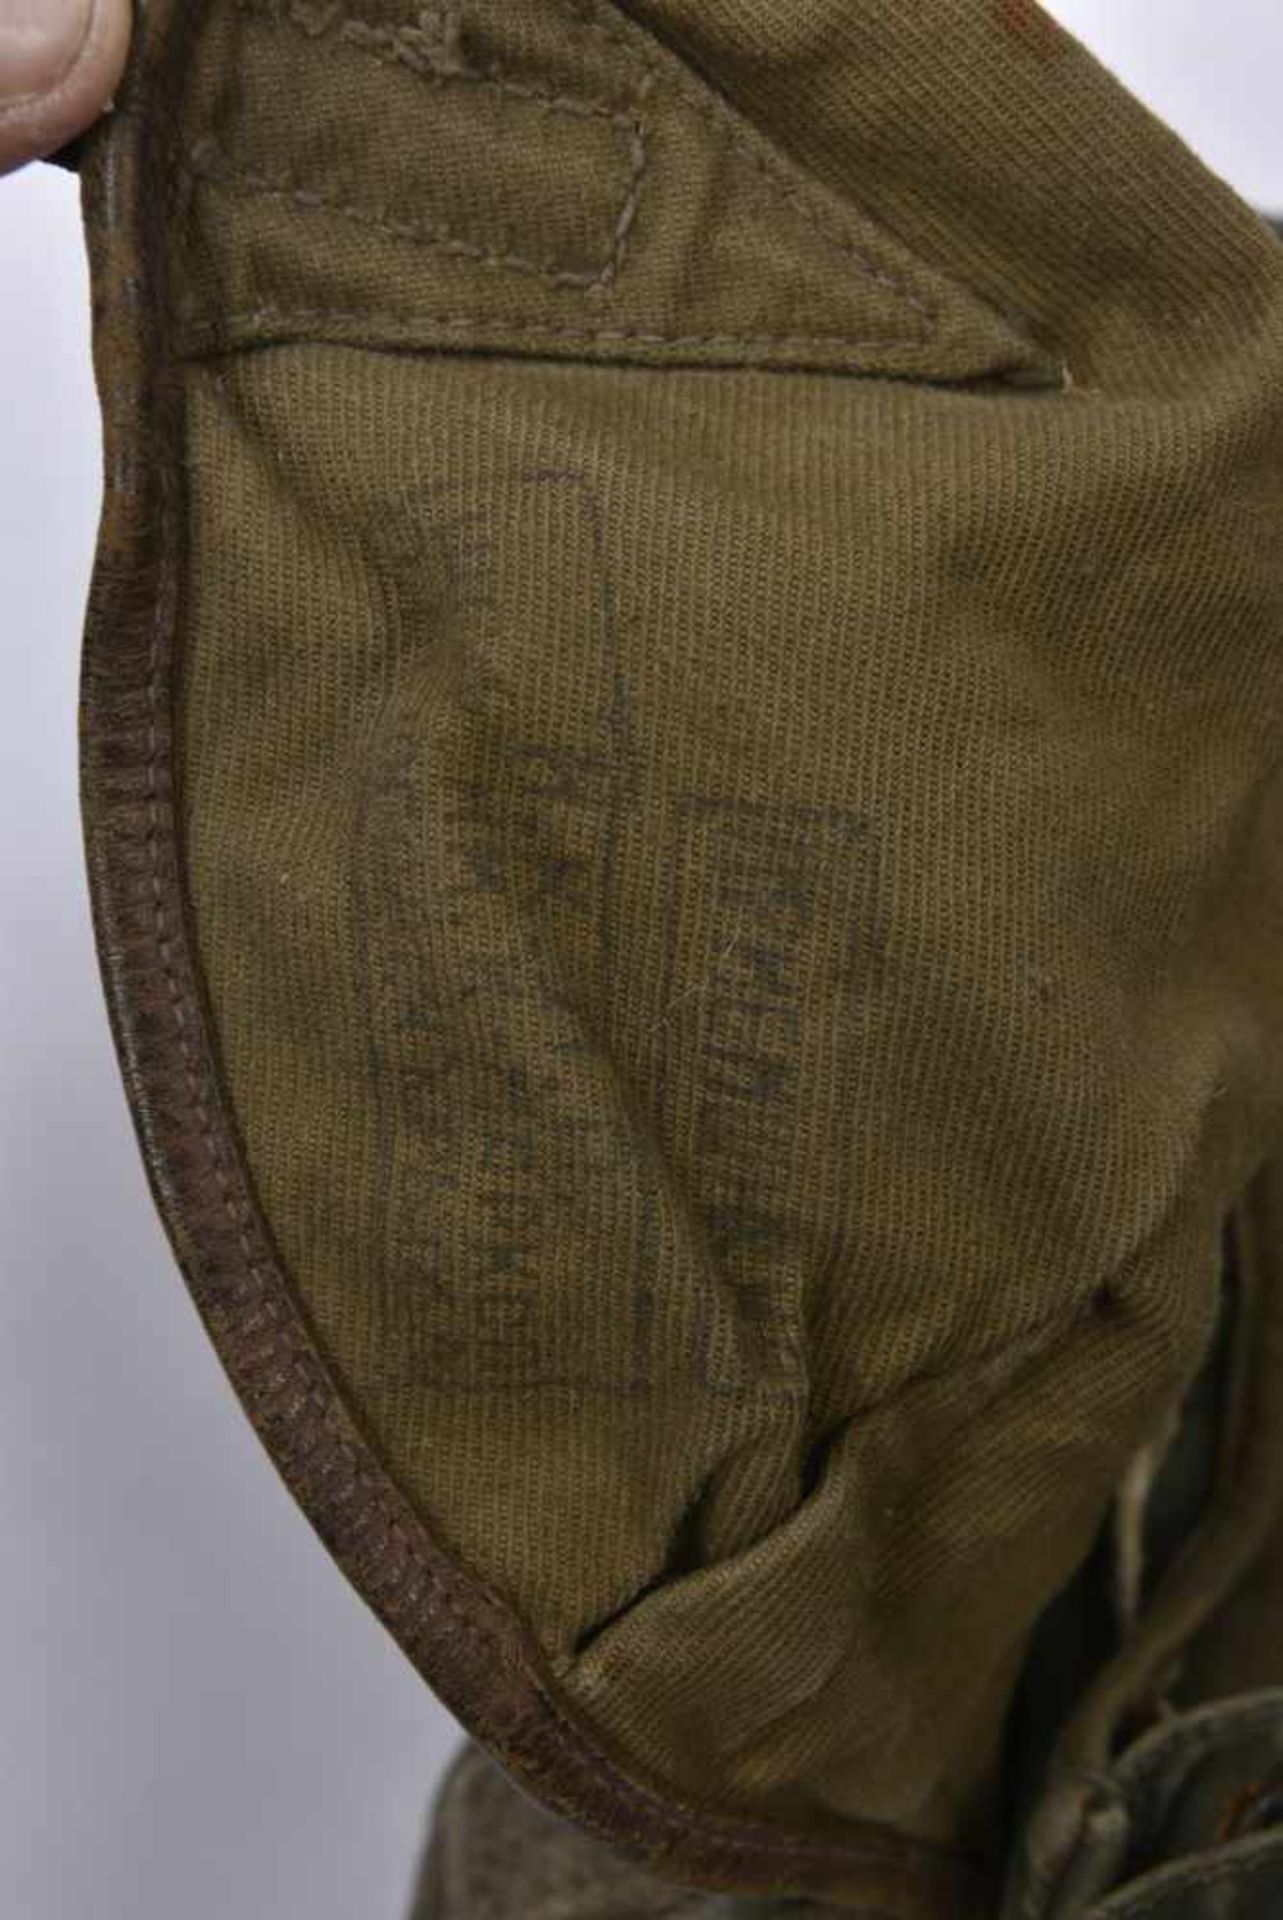 Sac à dos M.39 en toile verte, complet avec bretelles. 1 languette cuir de pochette latérales - Bild 2 aus 4